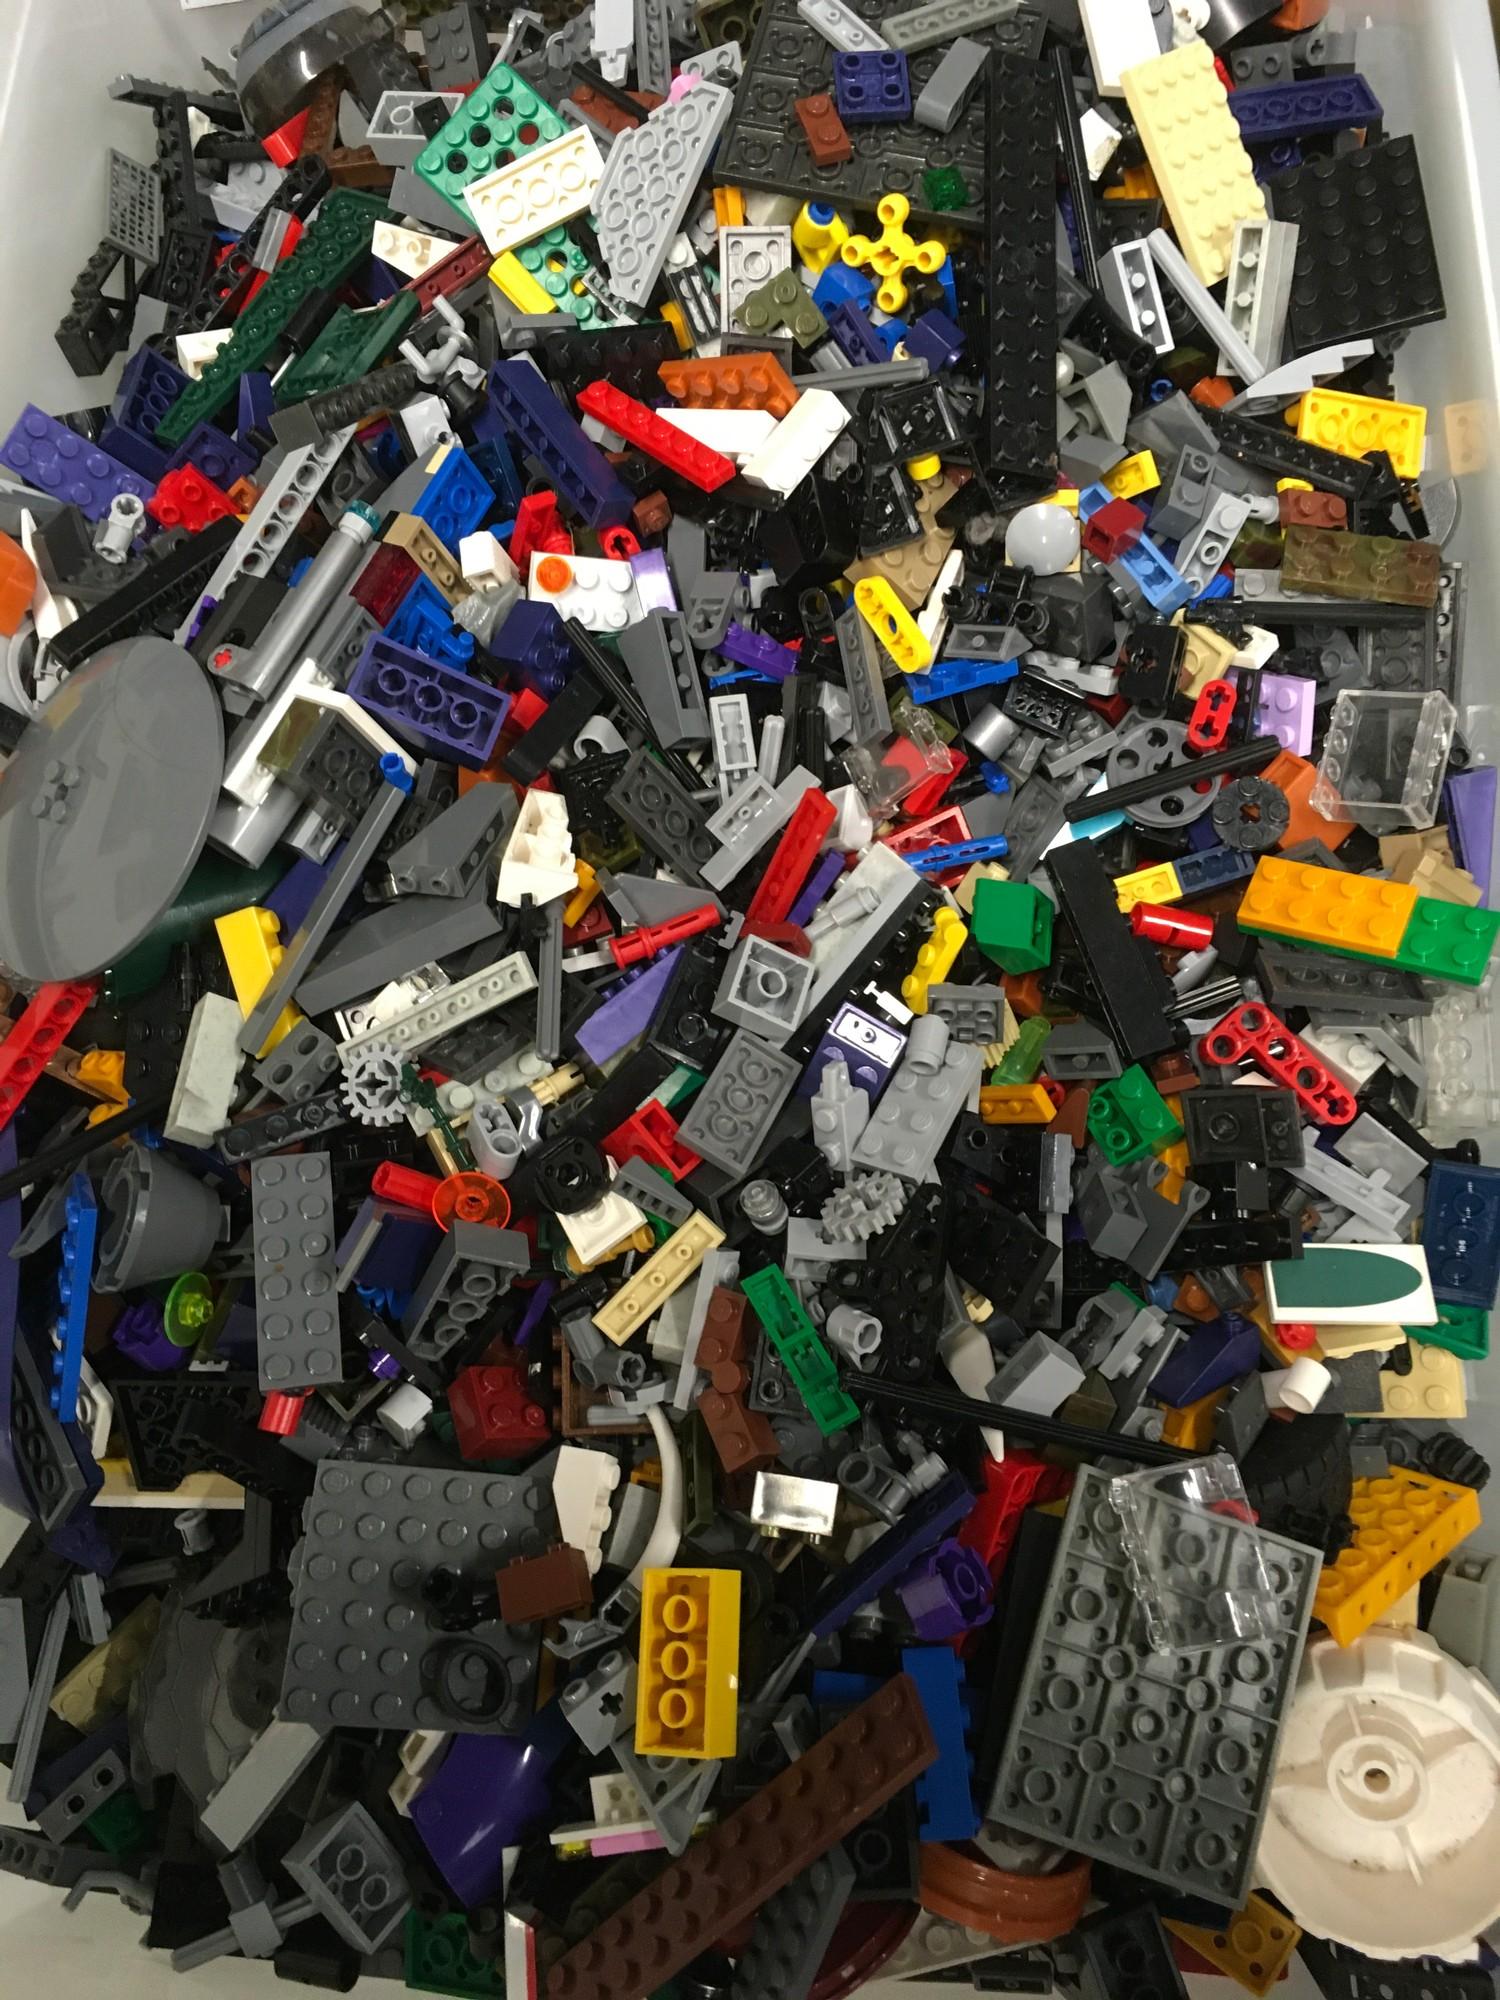 A tub of Lego.